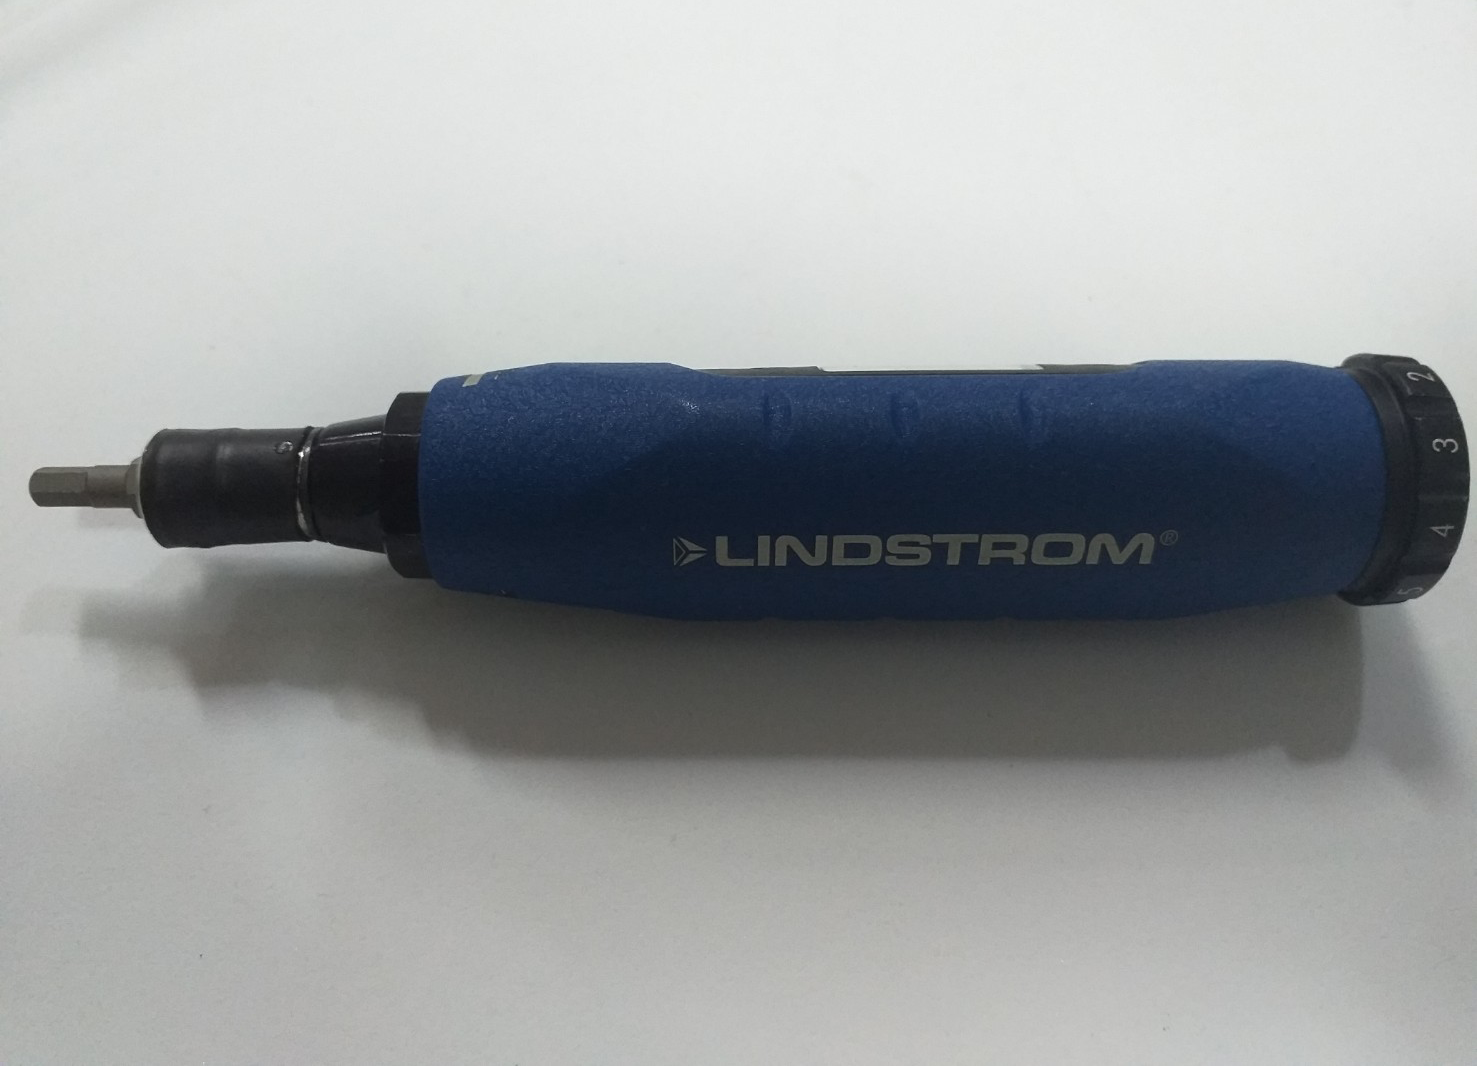 ไขควงวัดแรงบิดดิจิตอล แบบพกพา (Adjustable Torque Screwdrivers) ยี่ห้อ LINDSTROM รุ่น MA500-1 (UP6)